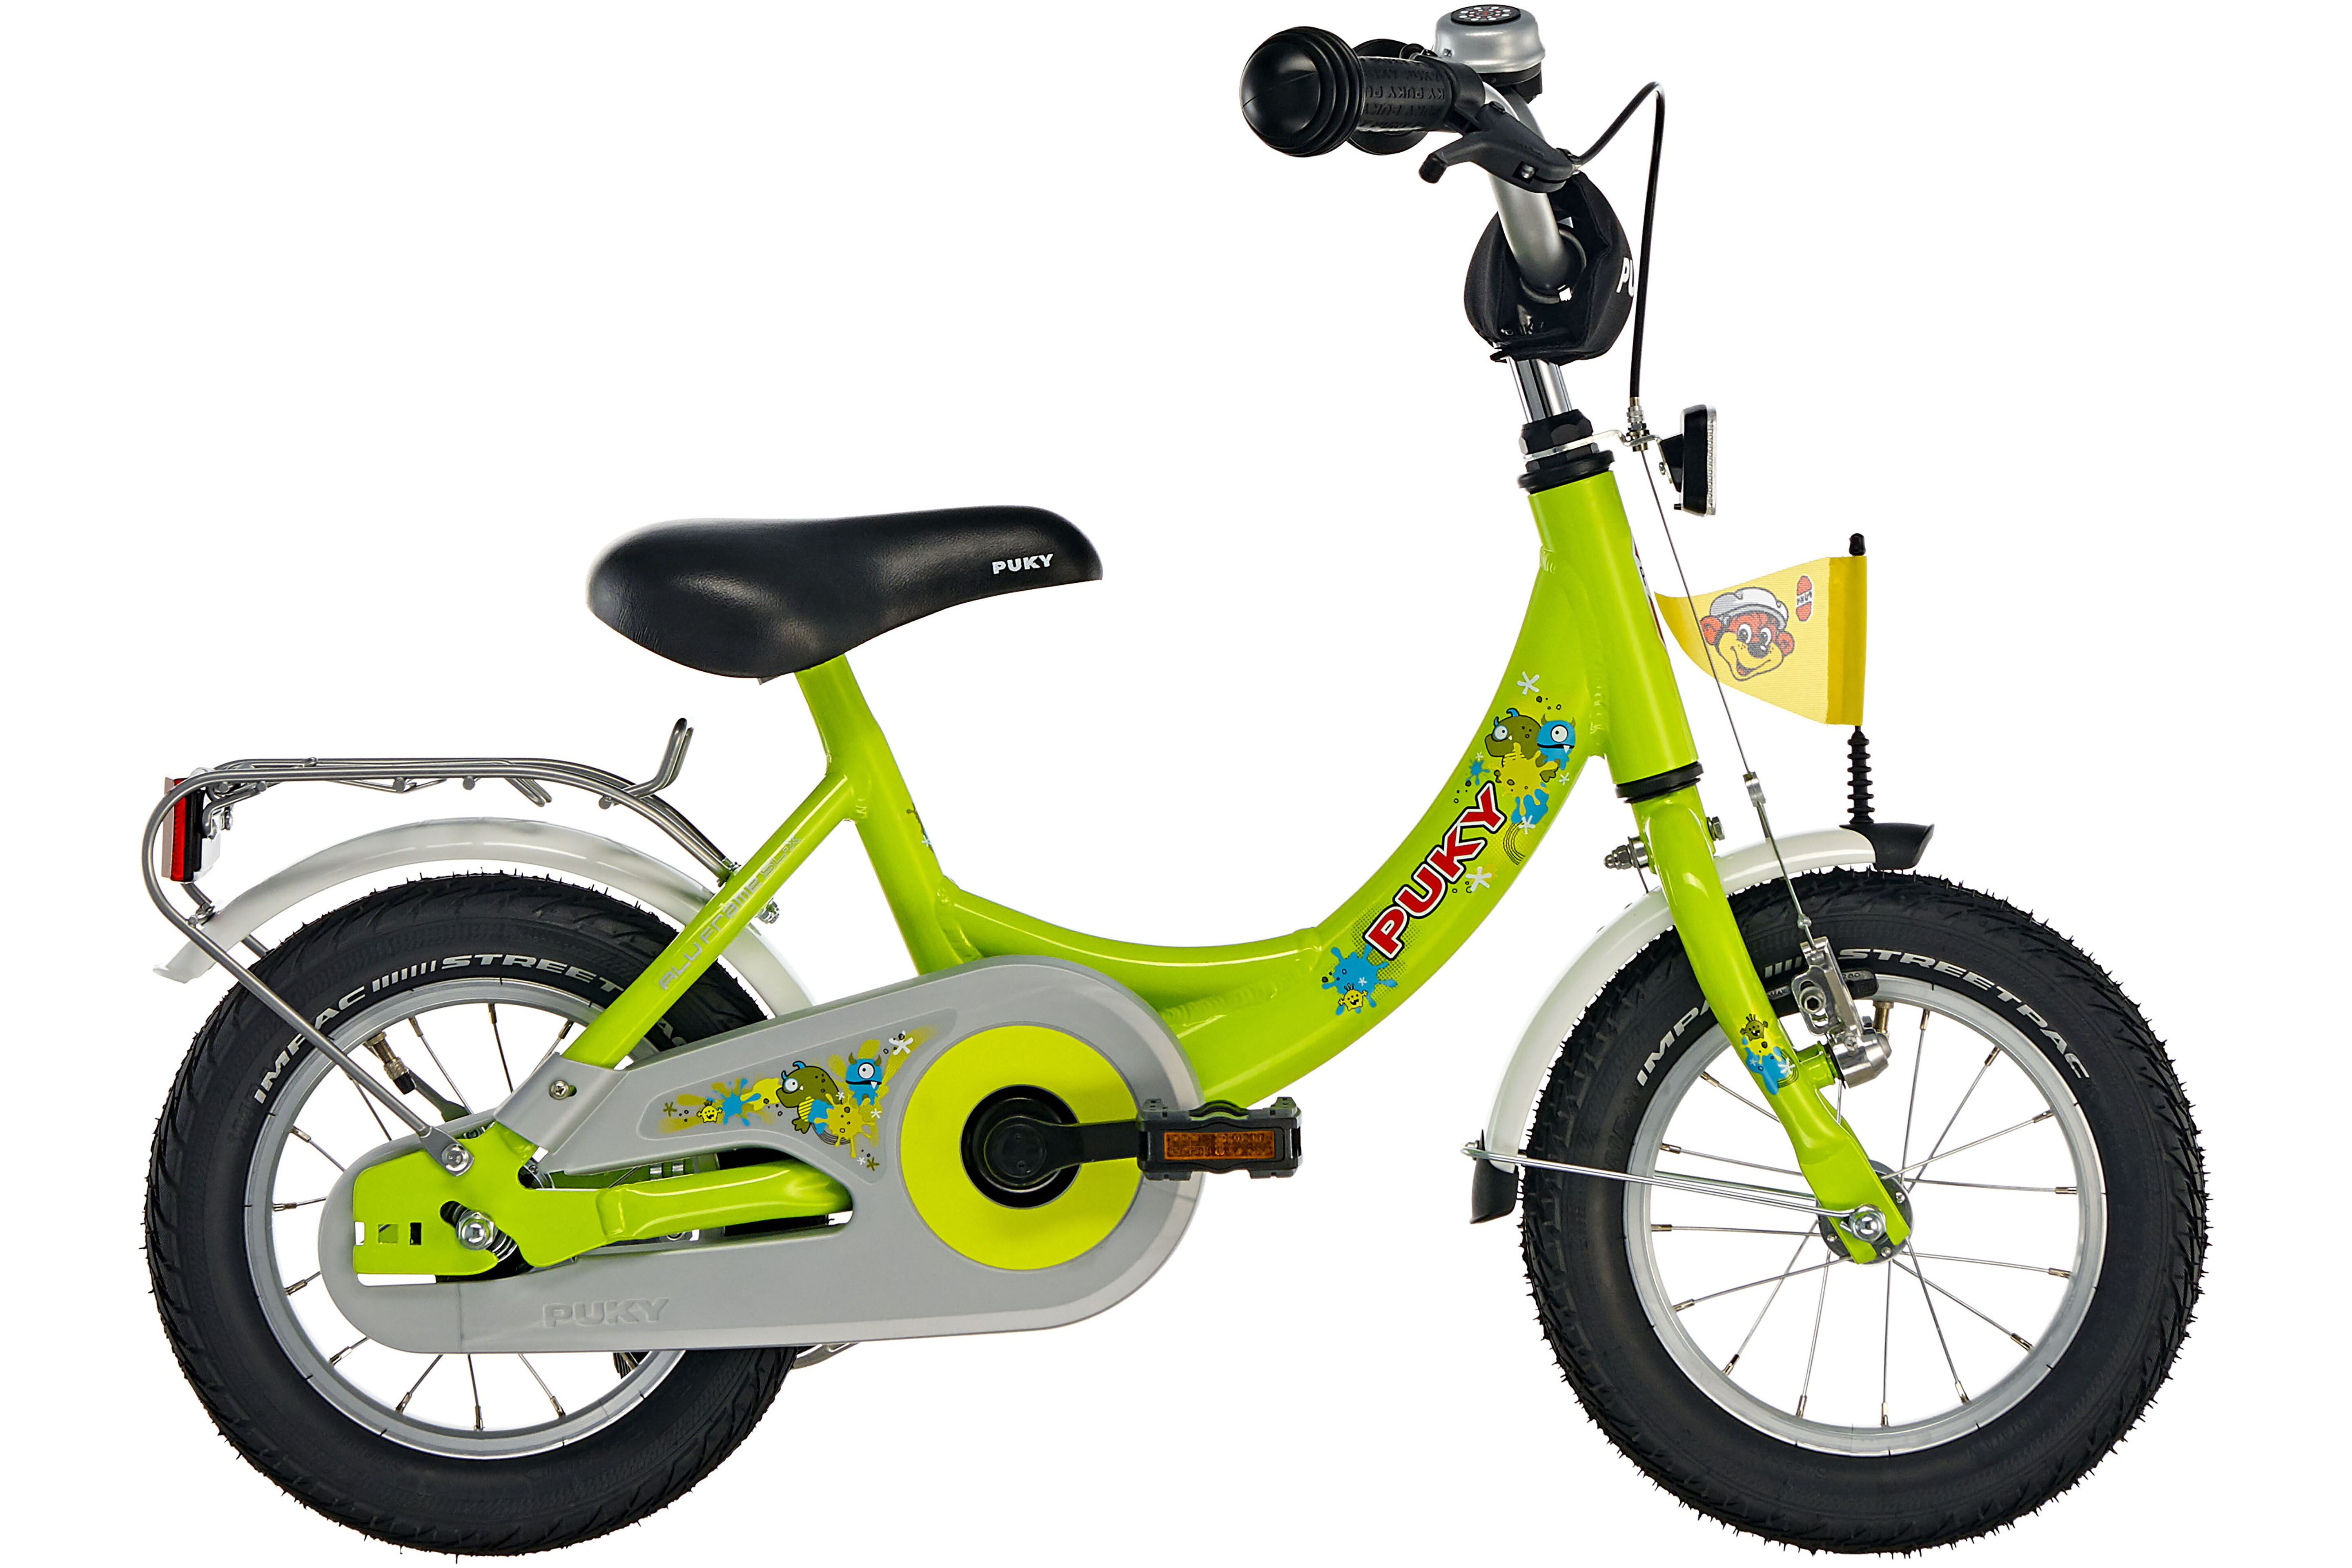 Puky ZL 121 Alu Fahrrad 12 Kinder kiwi günstig kaufen